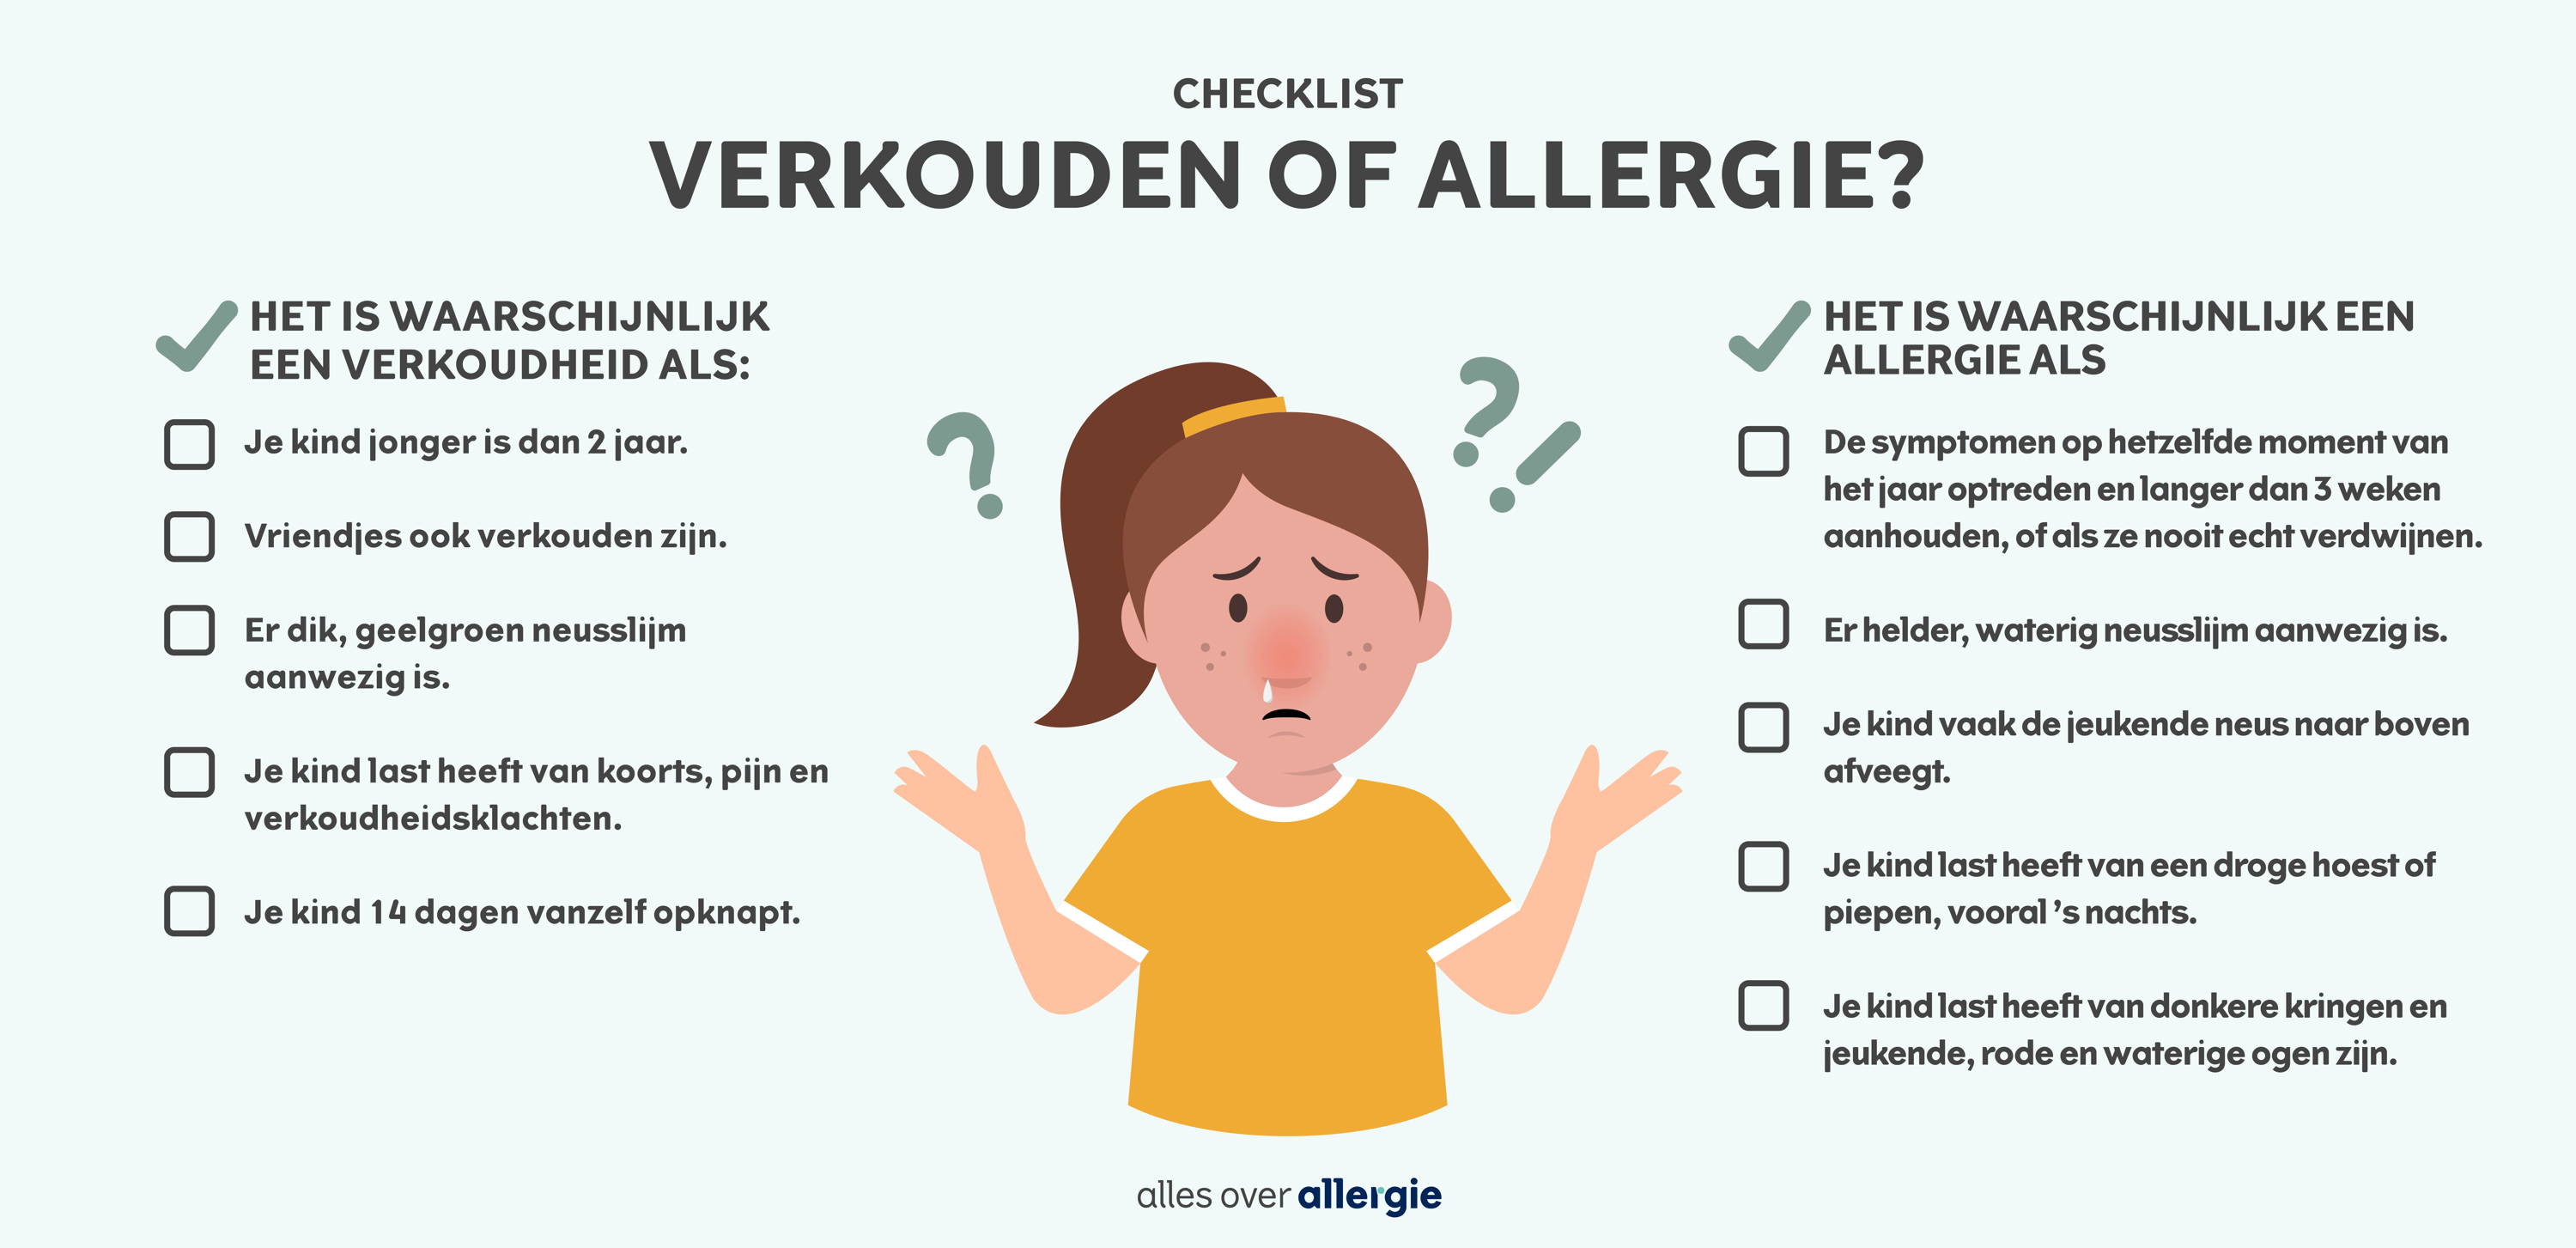 nfographic die de verschillen tussen een verkoudheid en allergie bij kinderen illustreert.